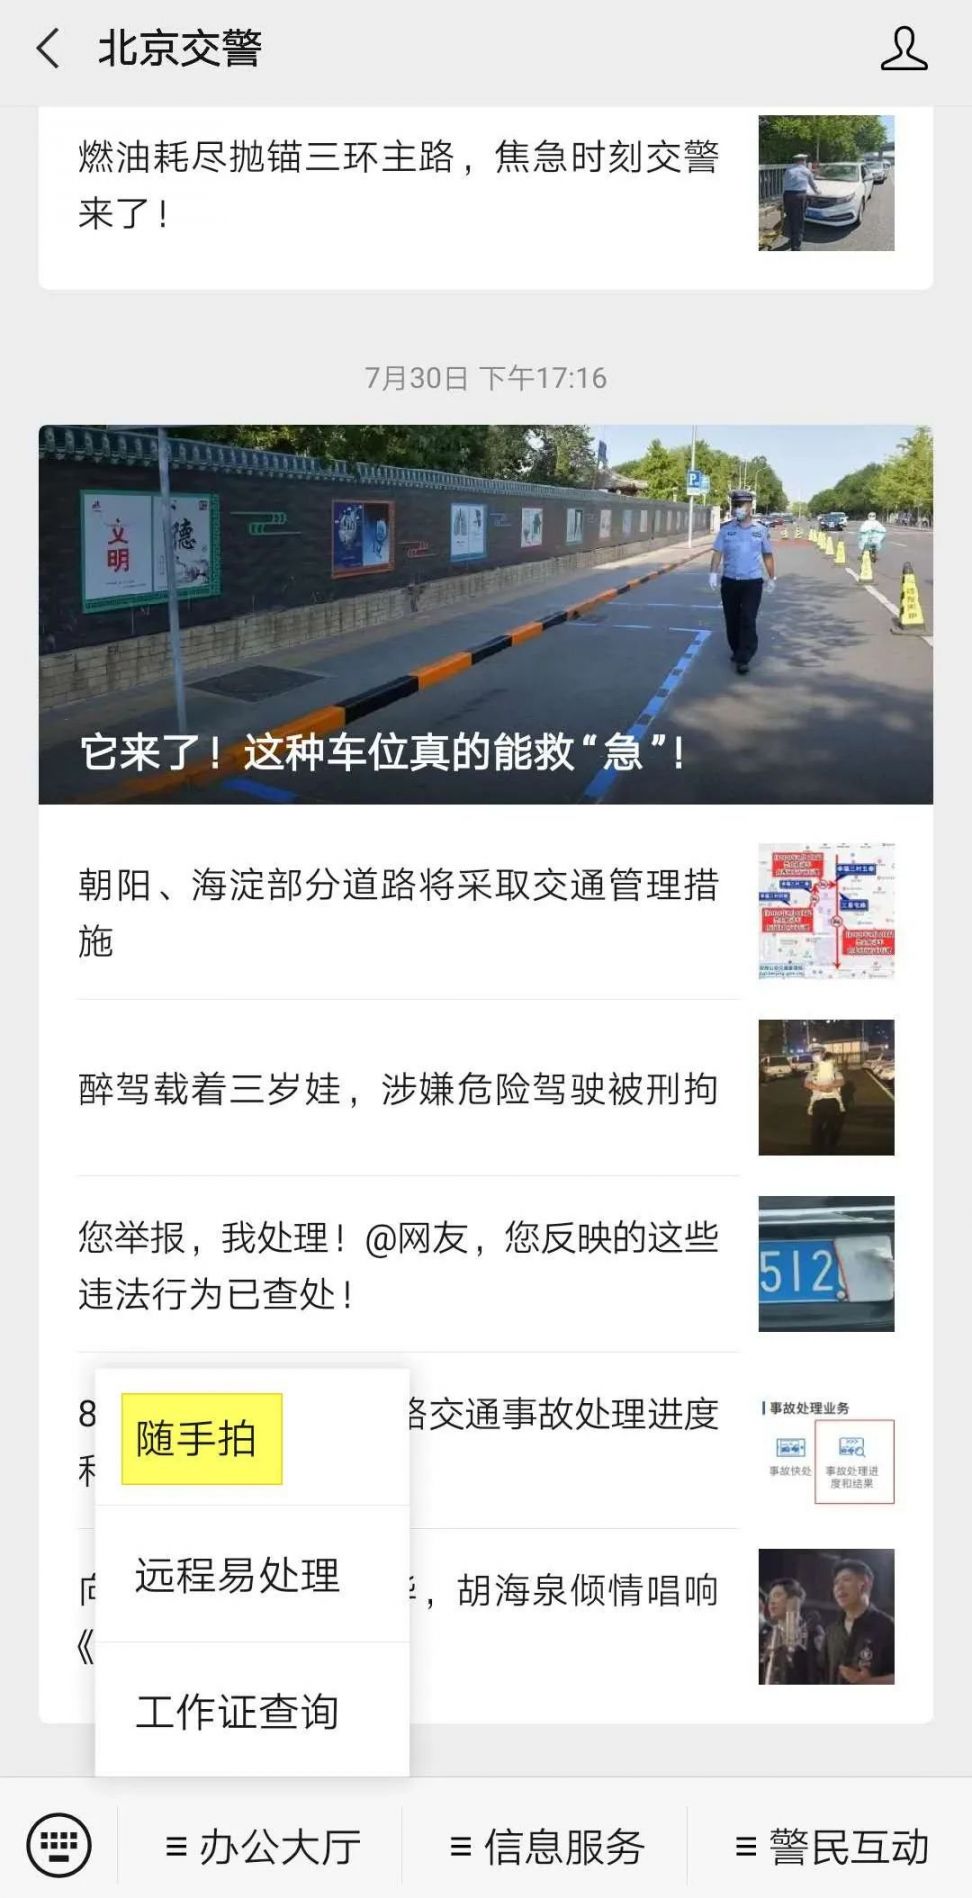 北京随手拍举报交通违章方式有哪些?